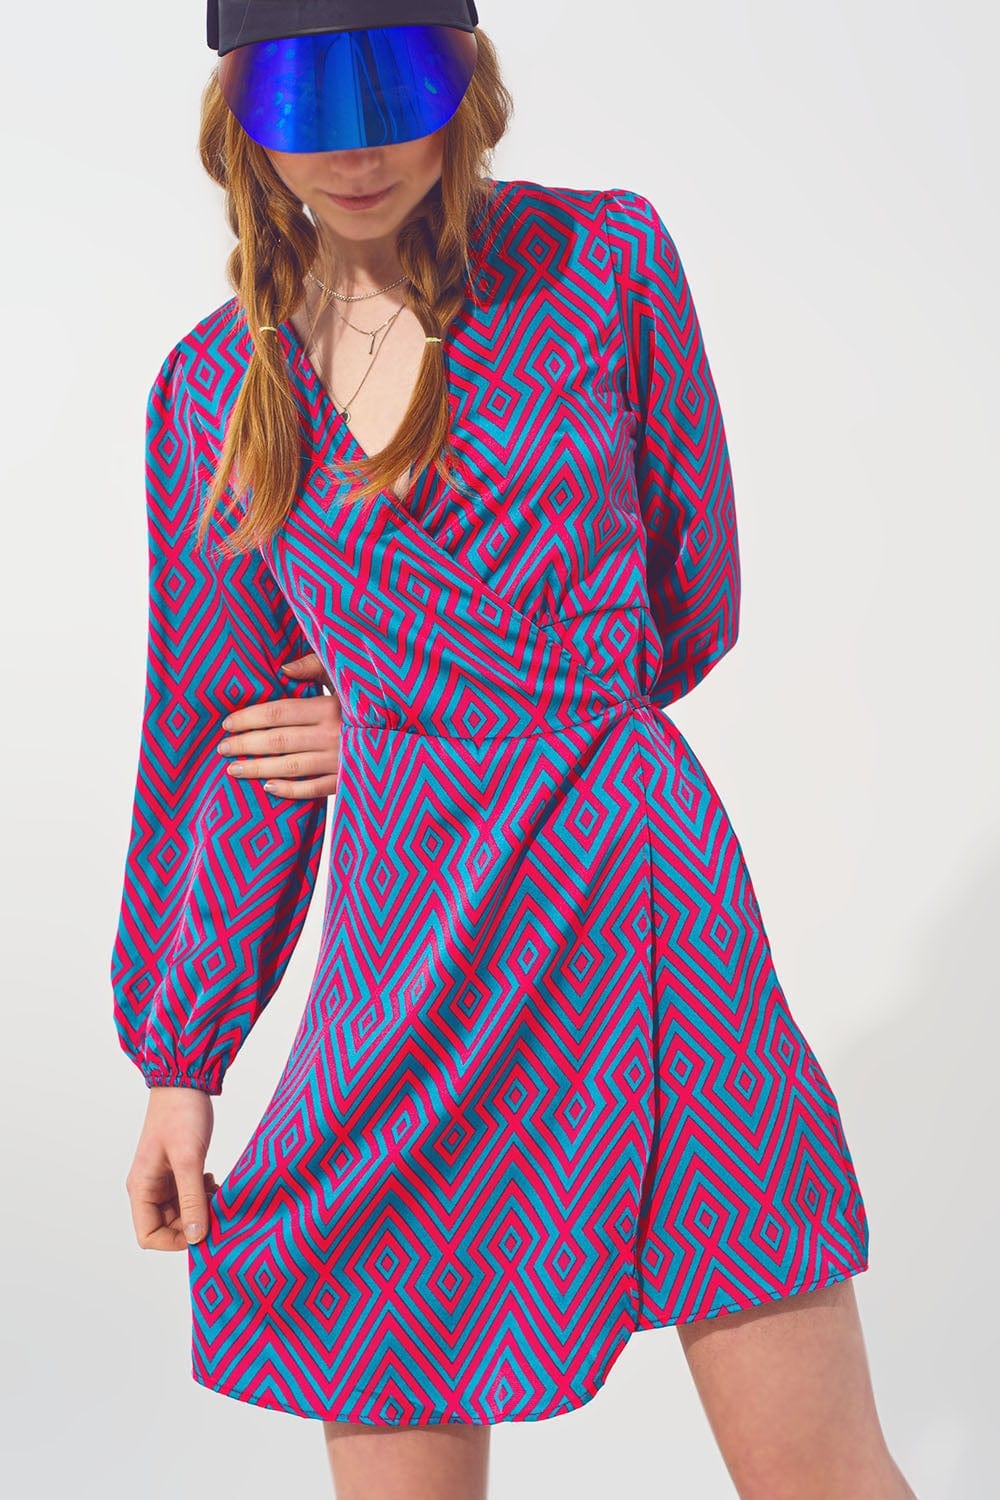 Q2 Dresses Mini V Neck Wrap Dress with Geometric Print